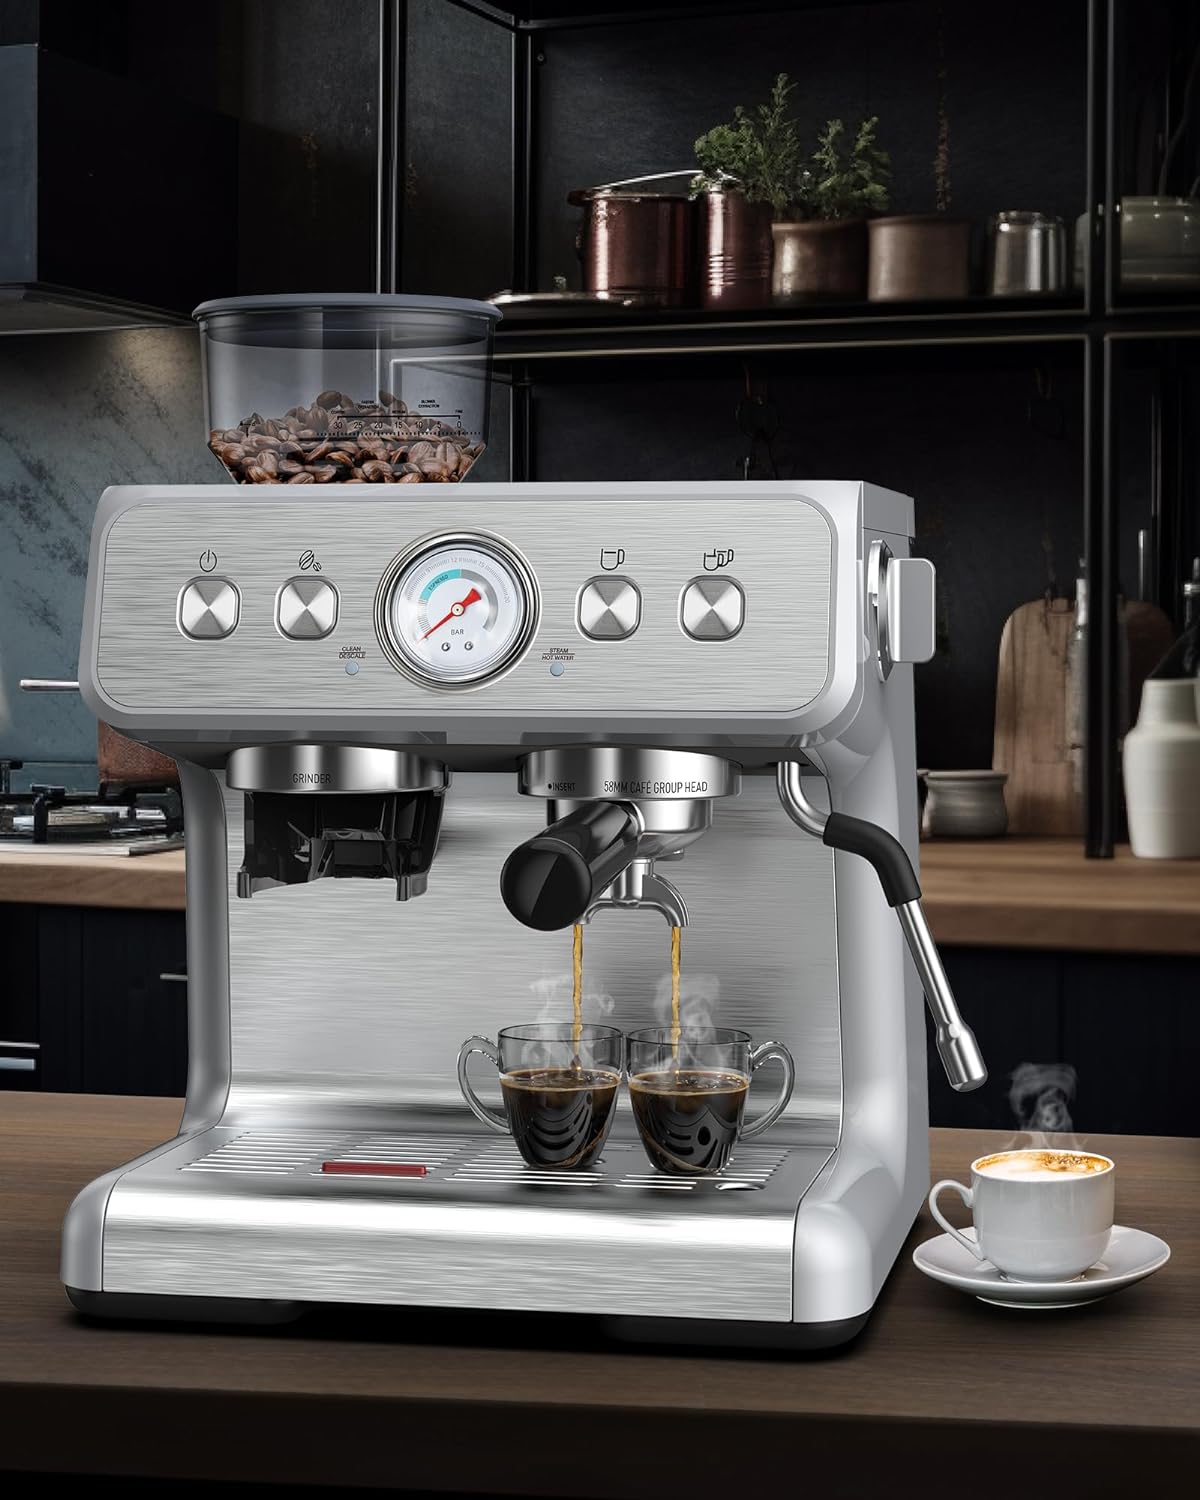 COWSAR Espresso Machine 20 Bar Review